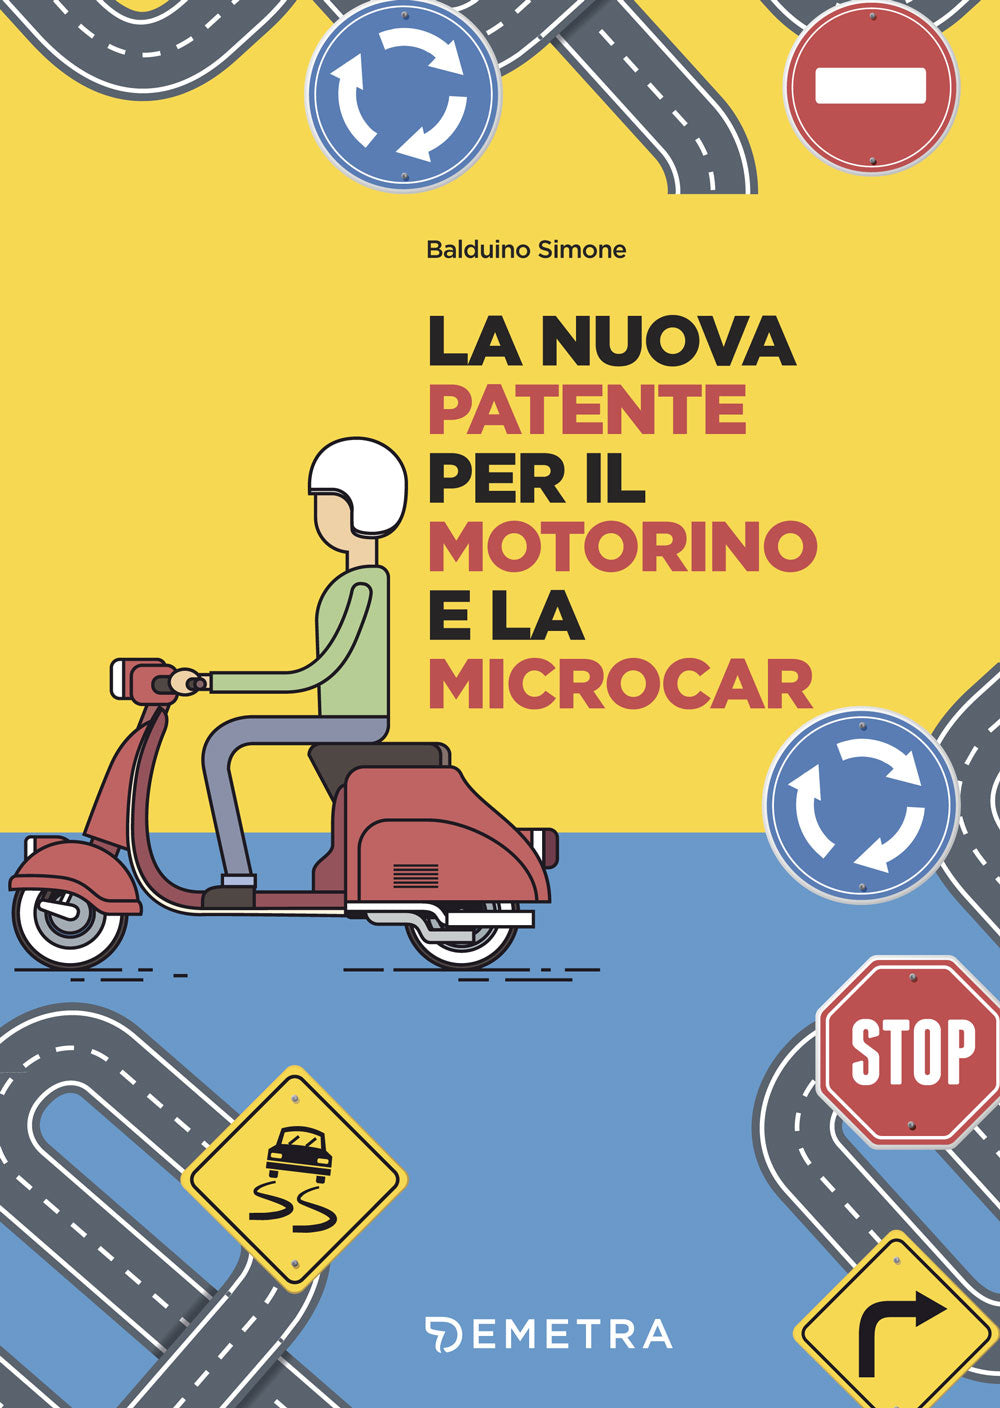 La nuova patente per il motorino e microcar::Teoria e test